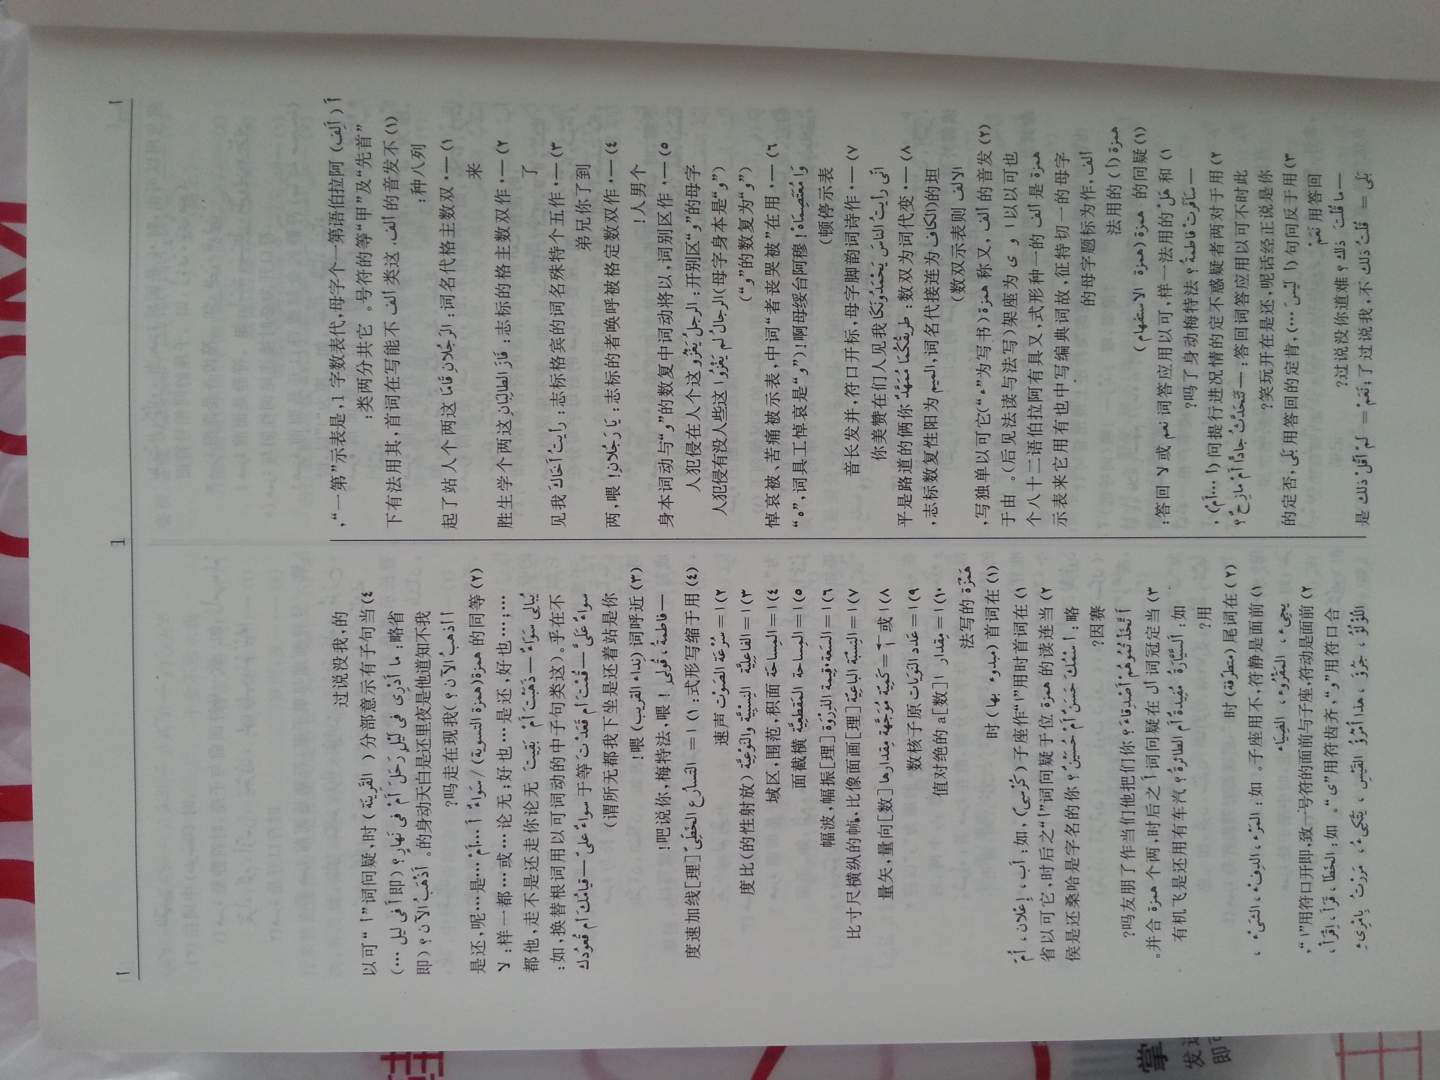 1.新阿拉伯语汉语大词典--不新   2000年前编写的，2003年印刷的版本，如今10多年了，貌似有许多词汇需要增补吧。2.正文第一页的“丨”竟然没印上！有点说不过去。